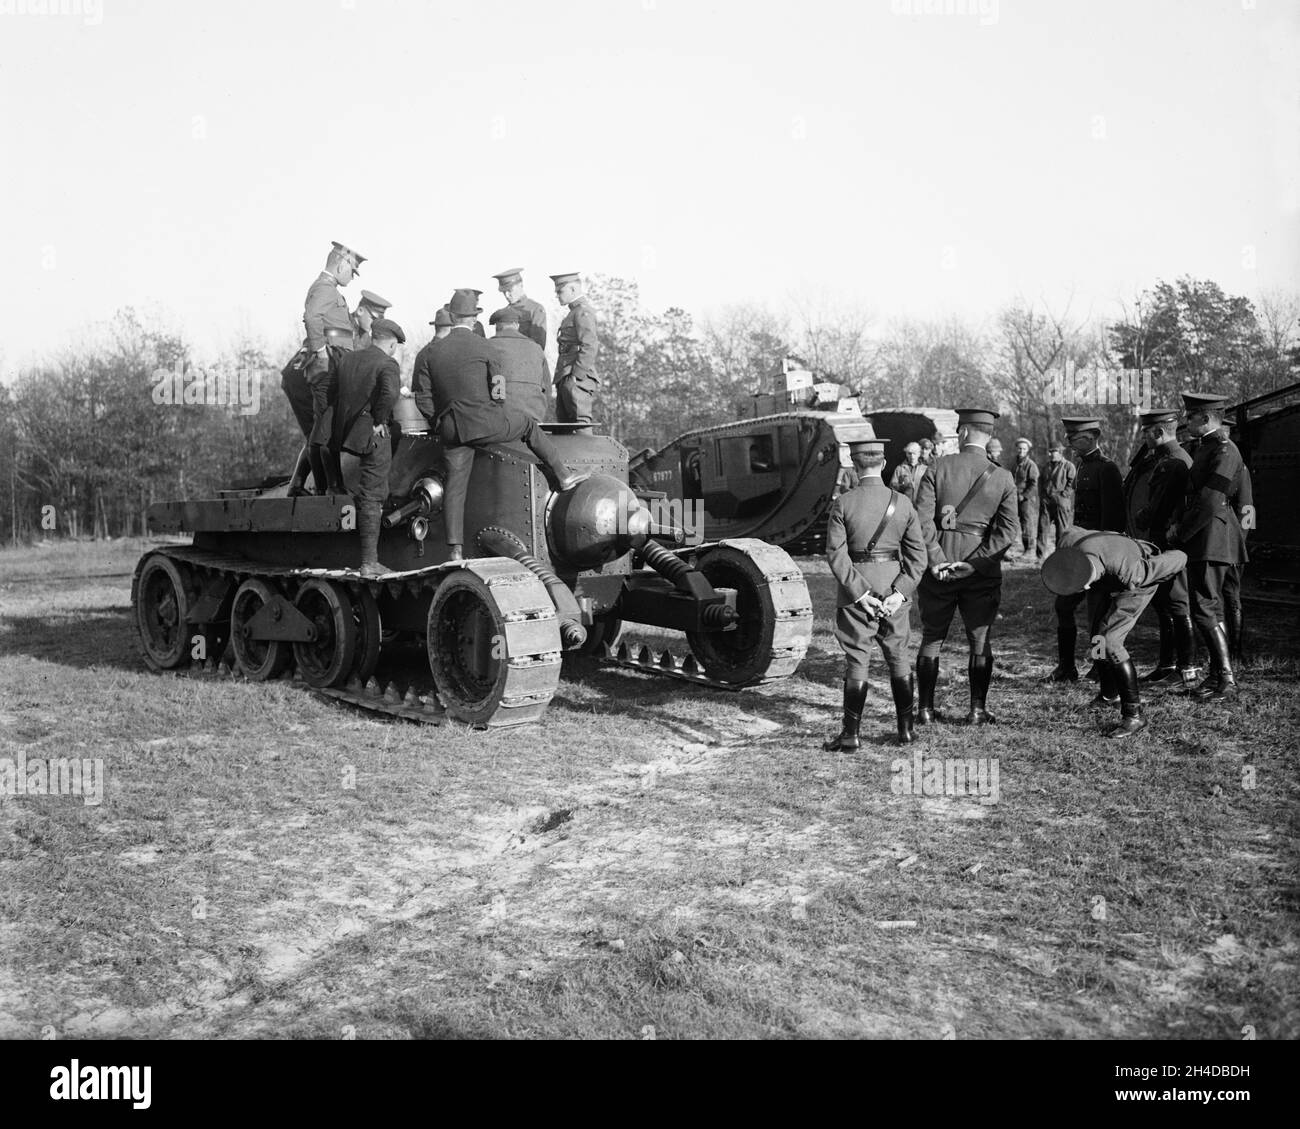 Ein Vintage-Foto von einem amerikanischen mittleren Panzer Christie M1921 aus dem Jahr 1922, das von Offizieren der US-Armee untersucht wurde. Das Projekt wurde 1924 vom Motoreningenieur und Konstrukteur John Walter Christie nach Tests durch das US Ordnance Department entworfen. Stockfoto